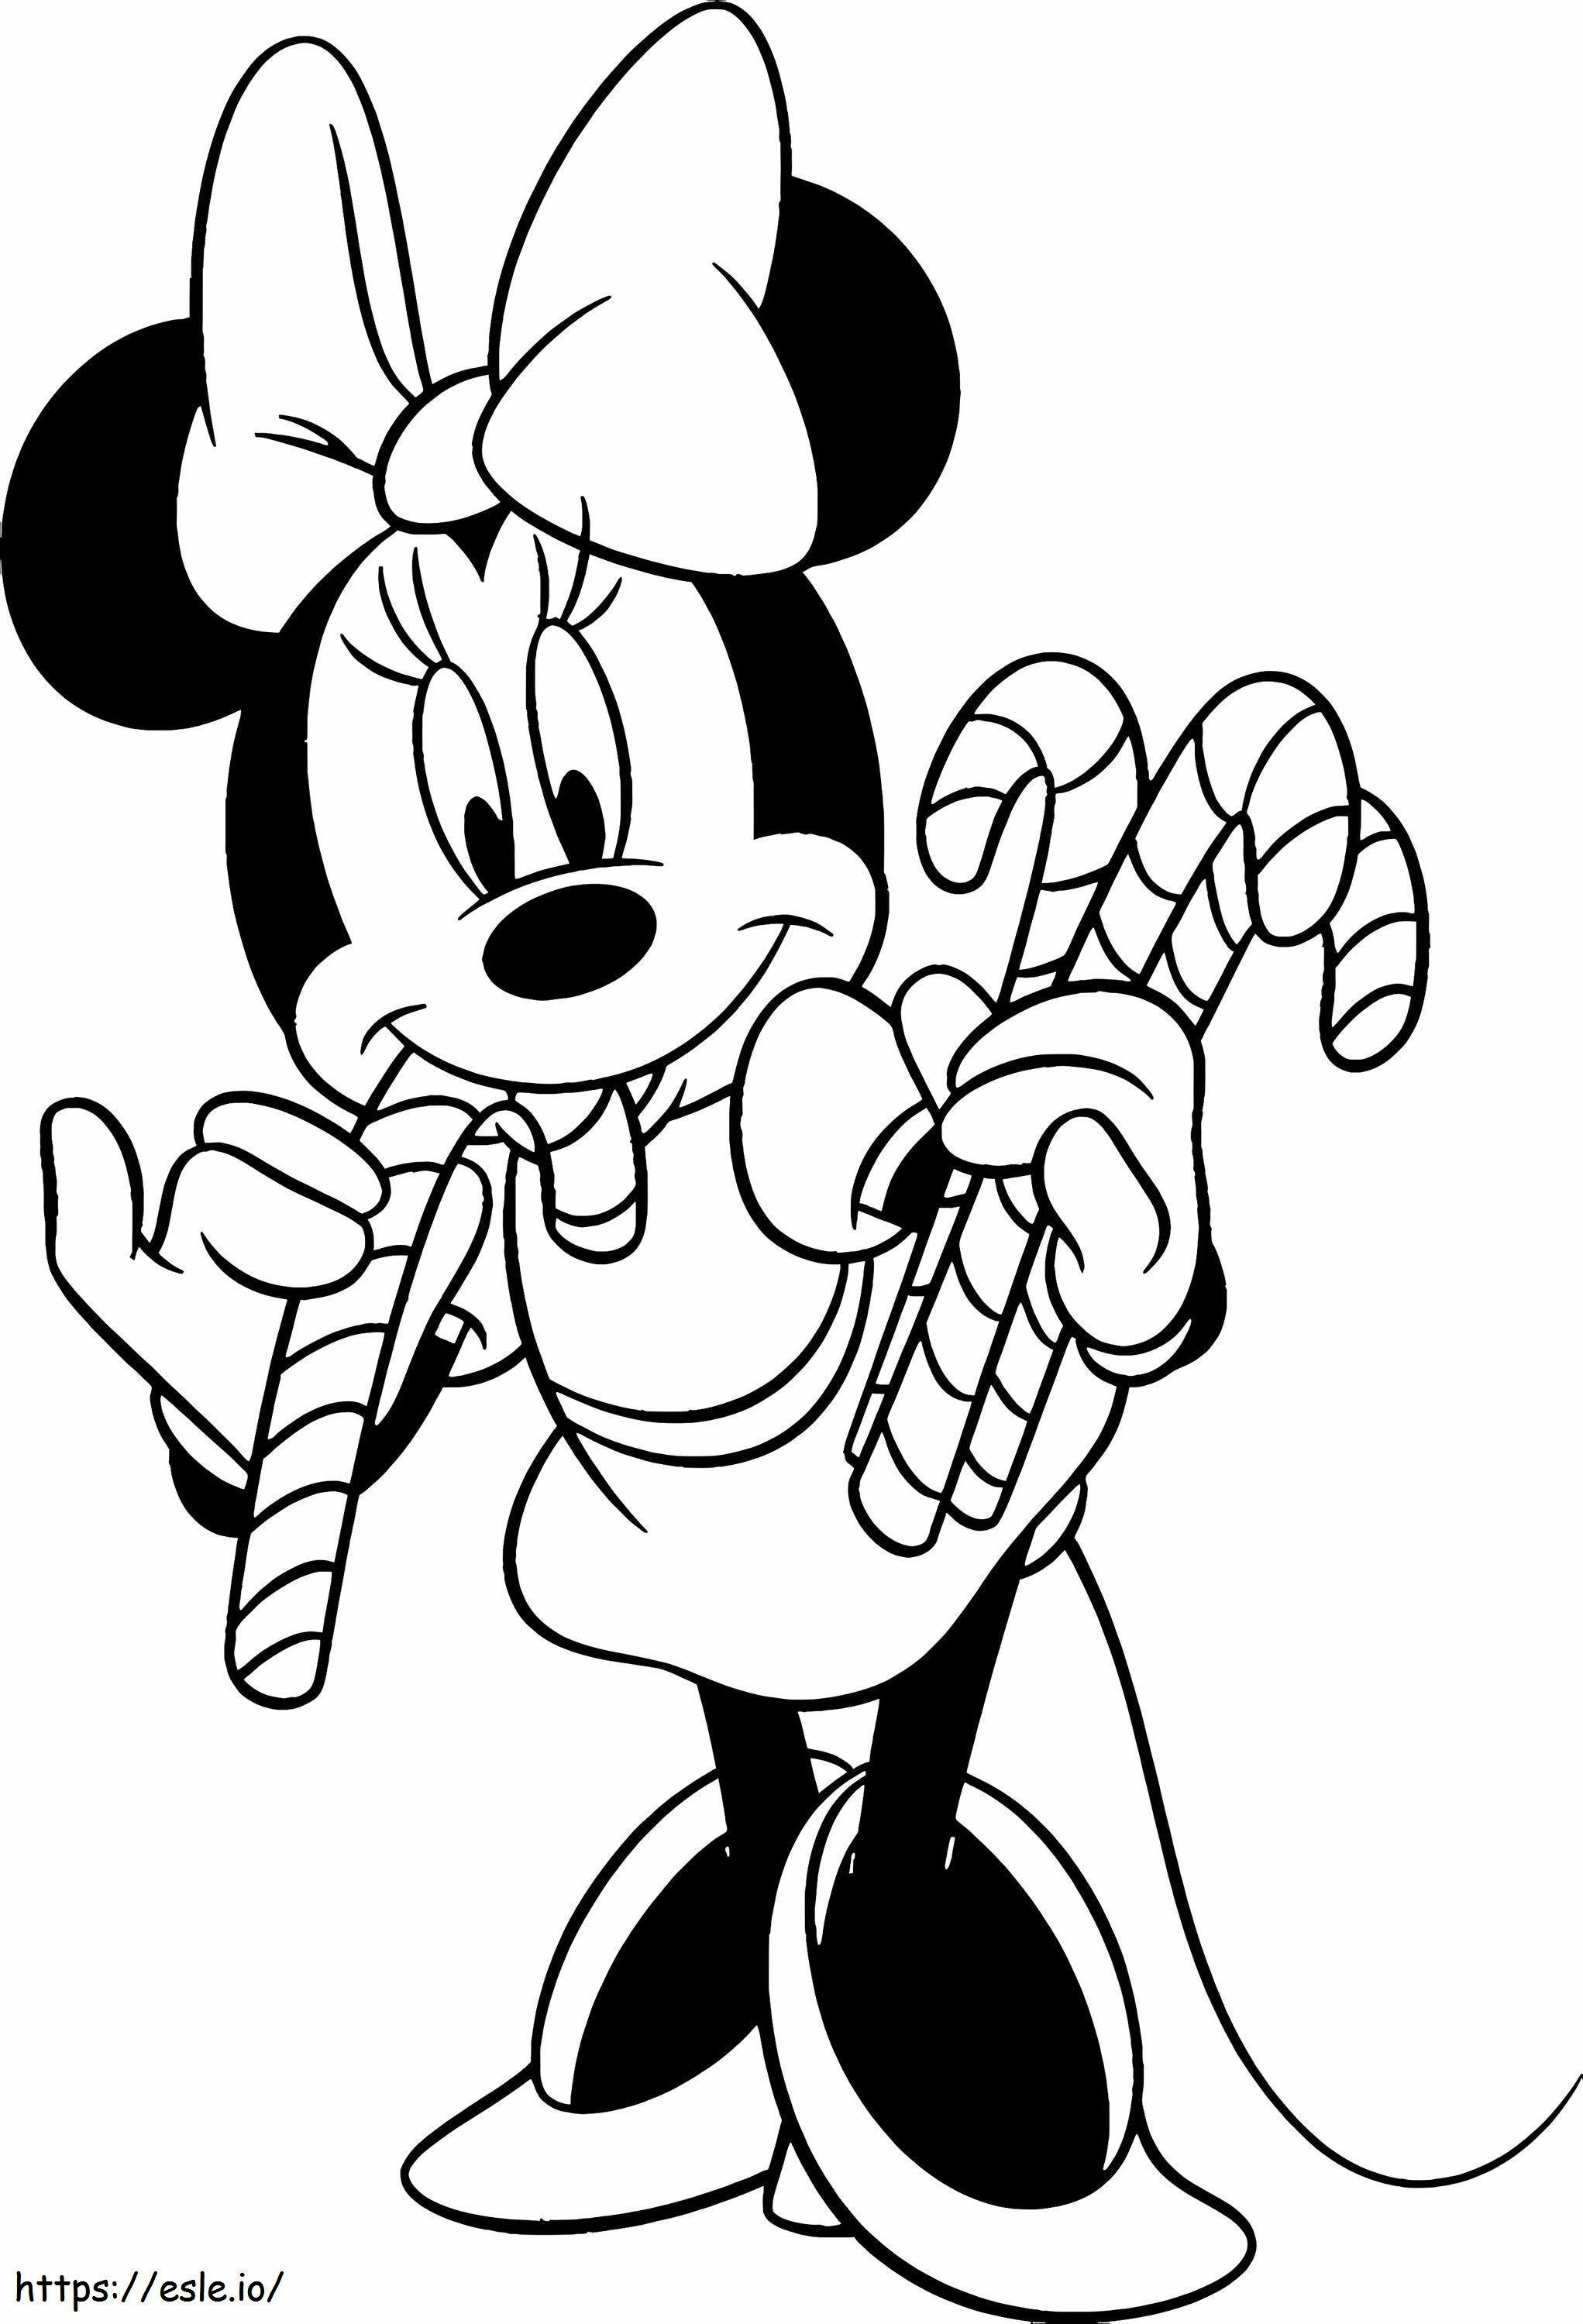 Minnie Mouse Şeker Tutuyor boyama